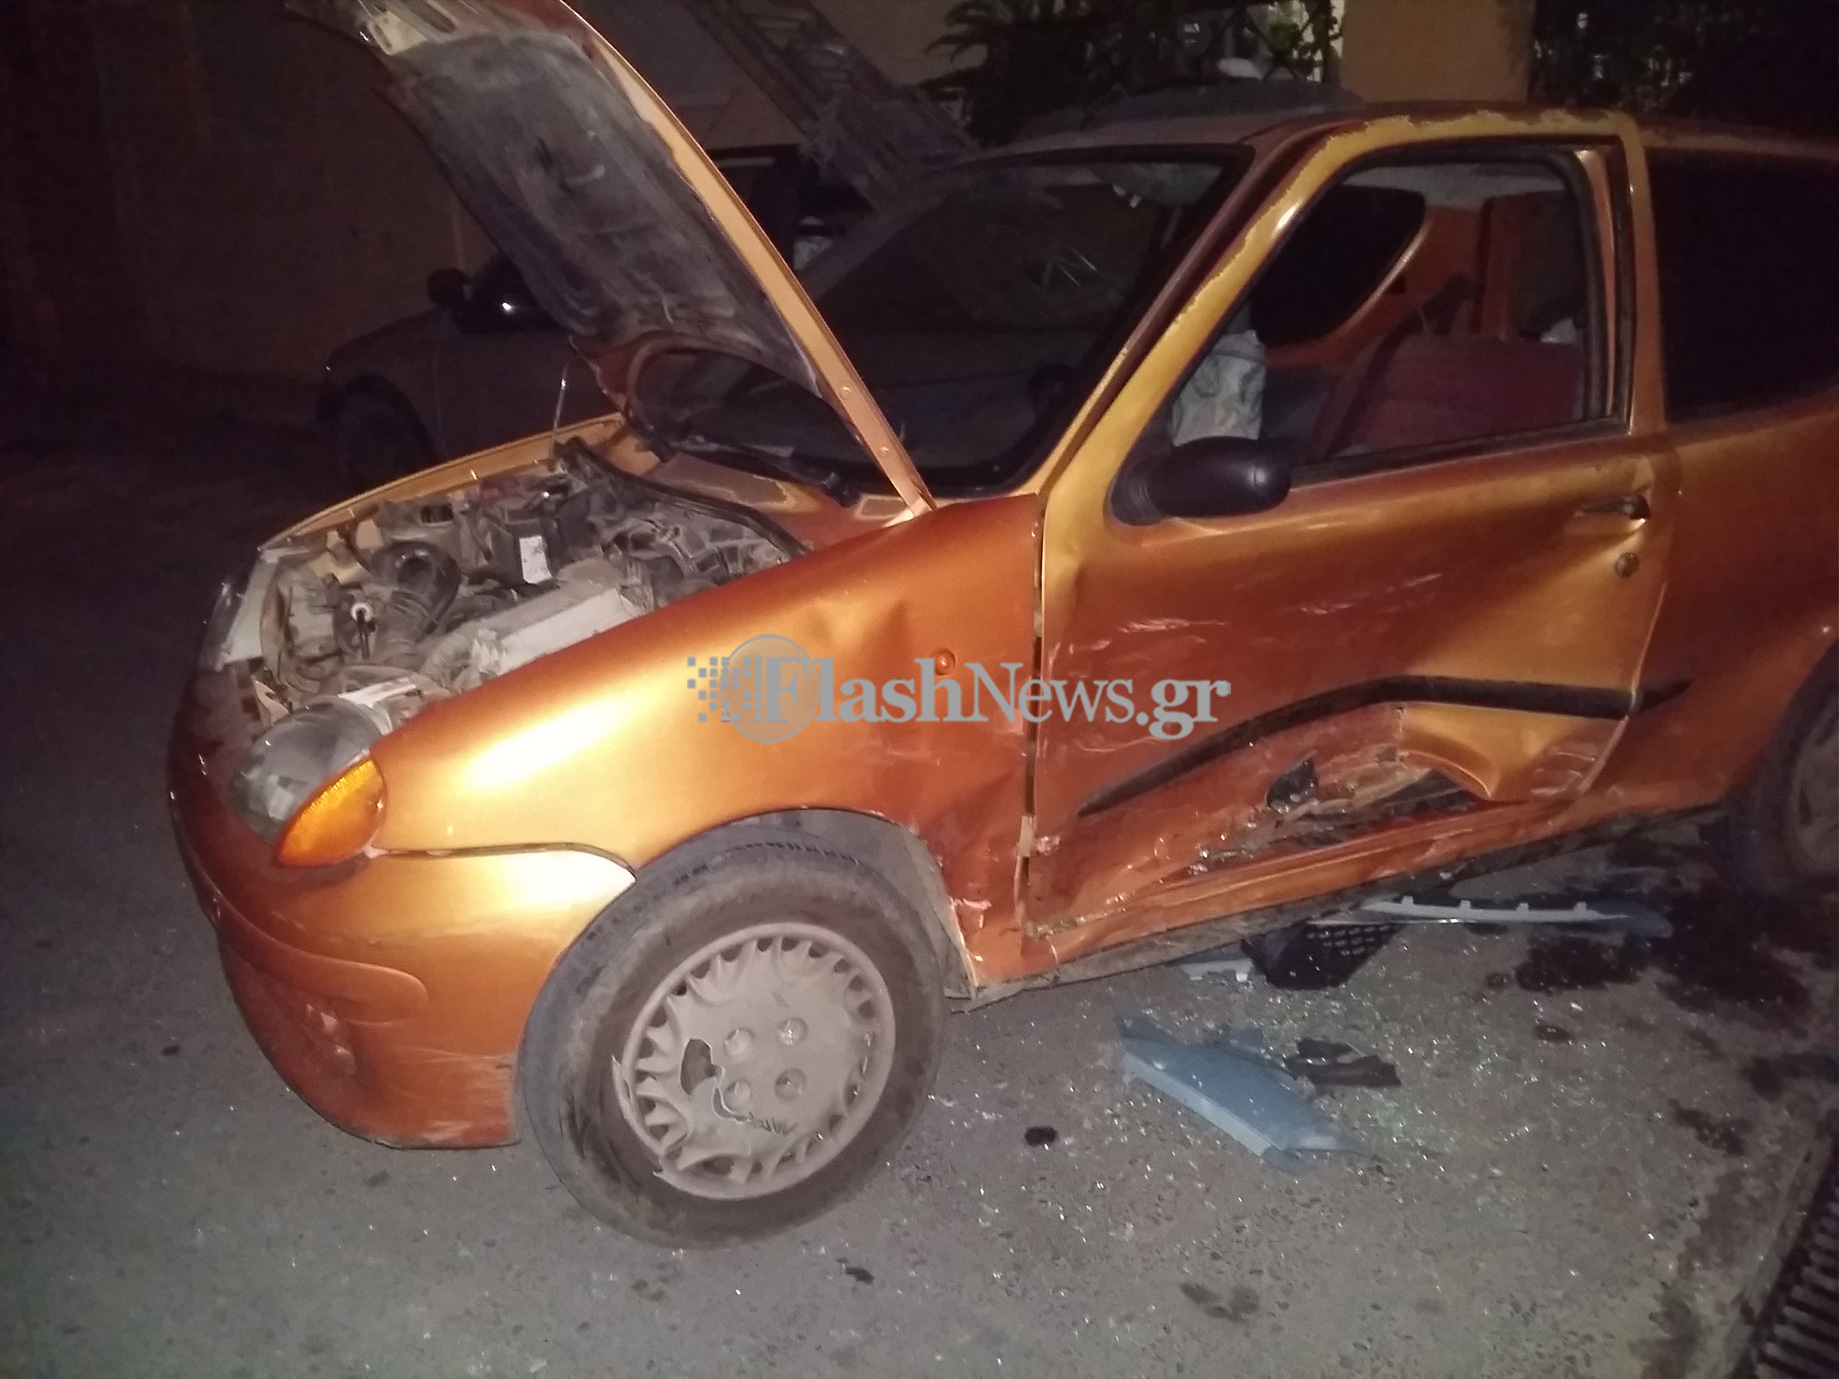 Δυο νεαροί τραυματίες από τη σύγκρουση δυο αυτοκινήτων στα Χανιά (φωτο)